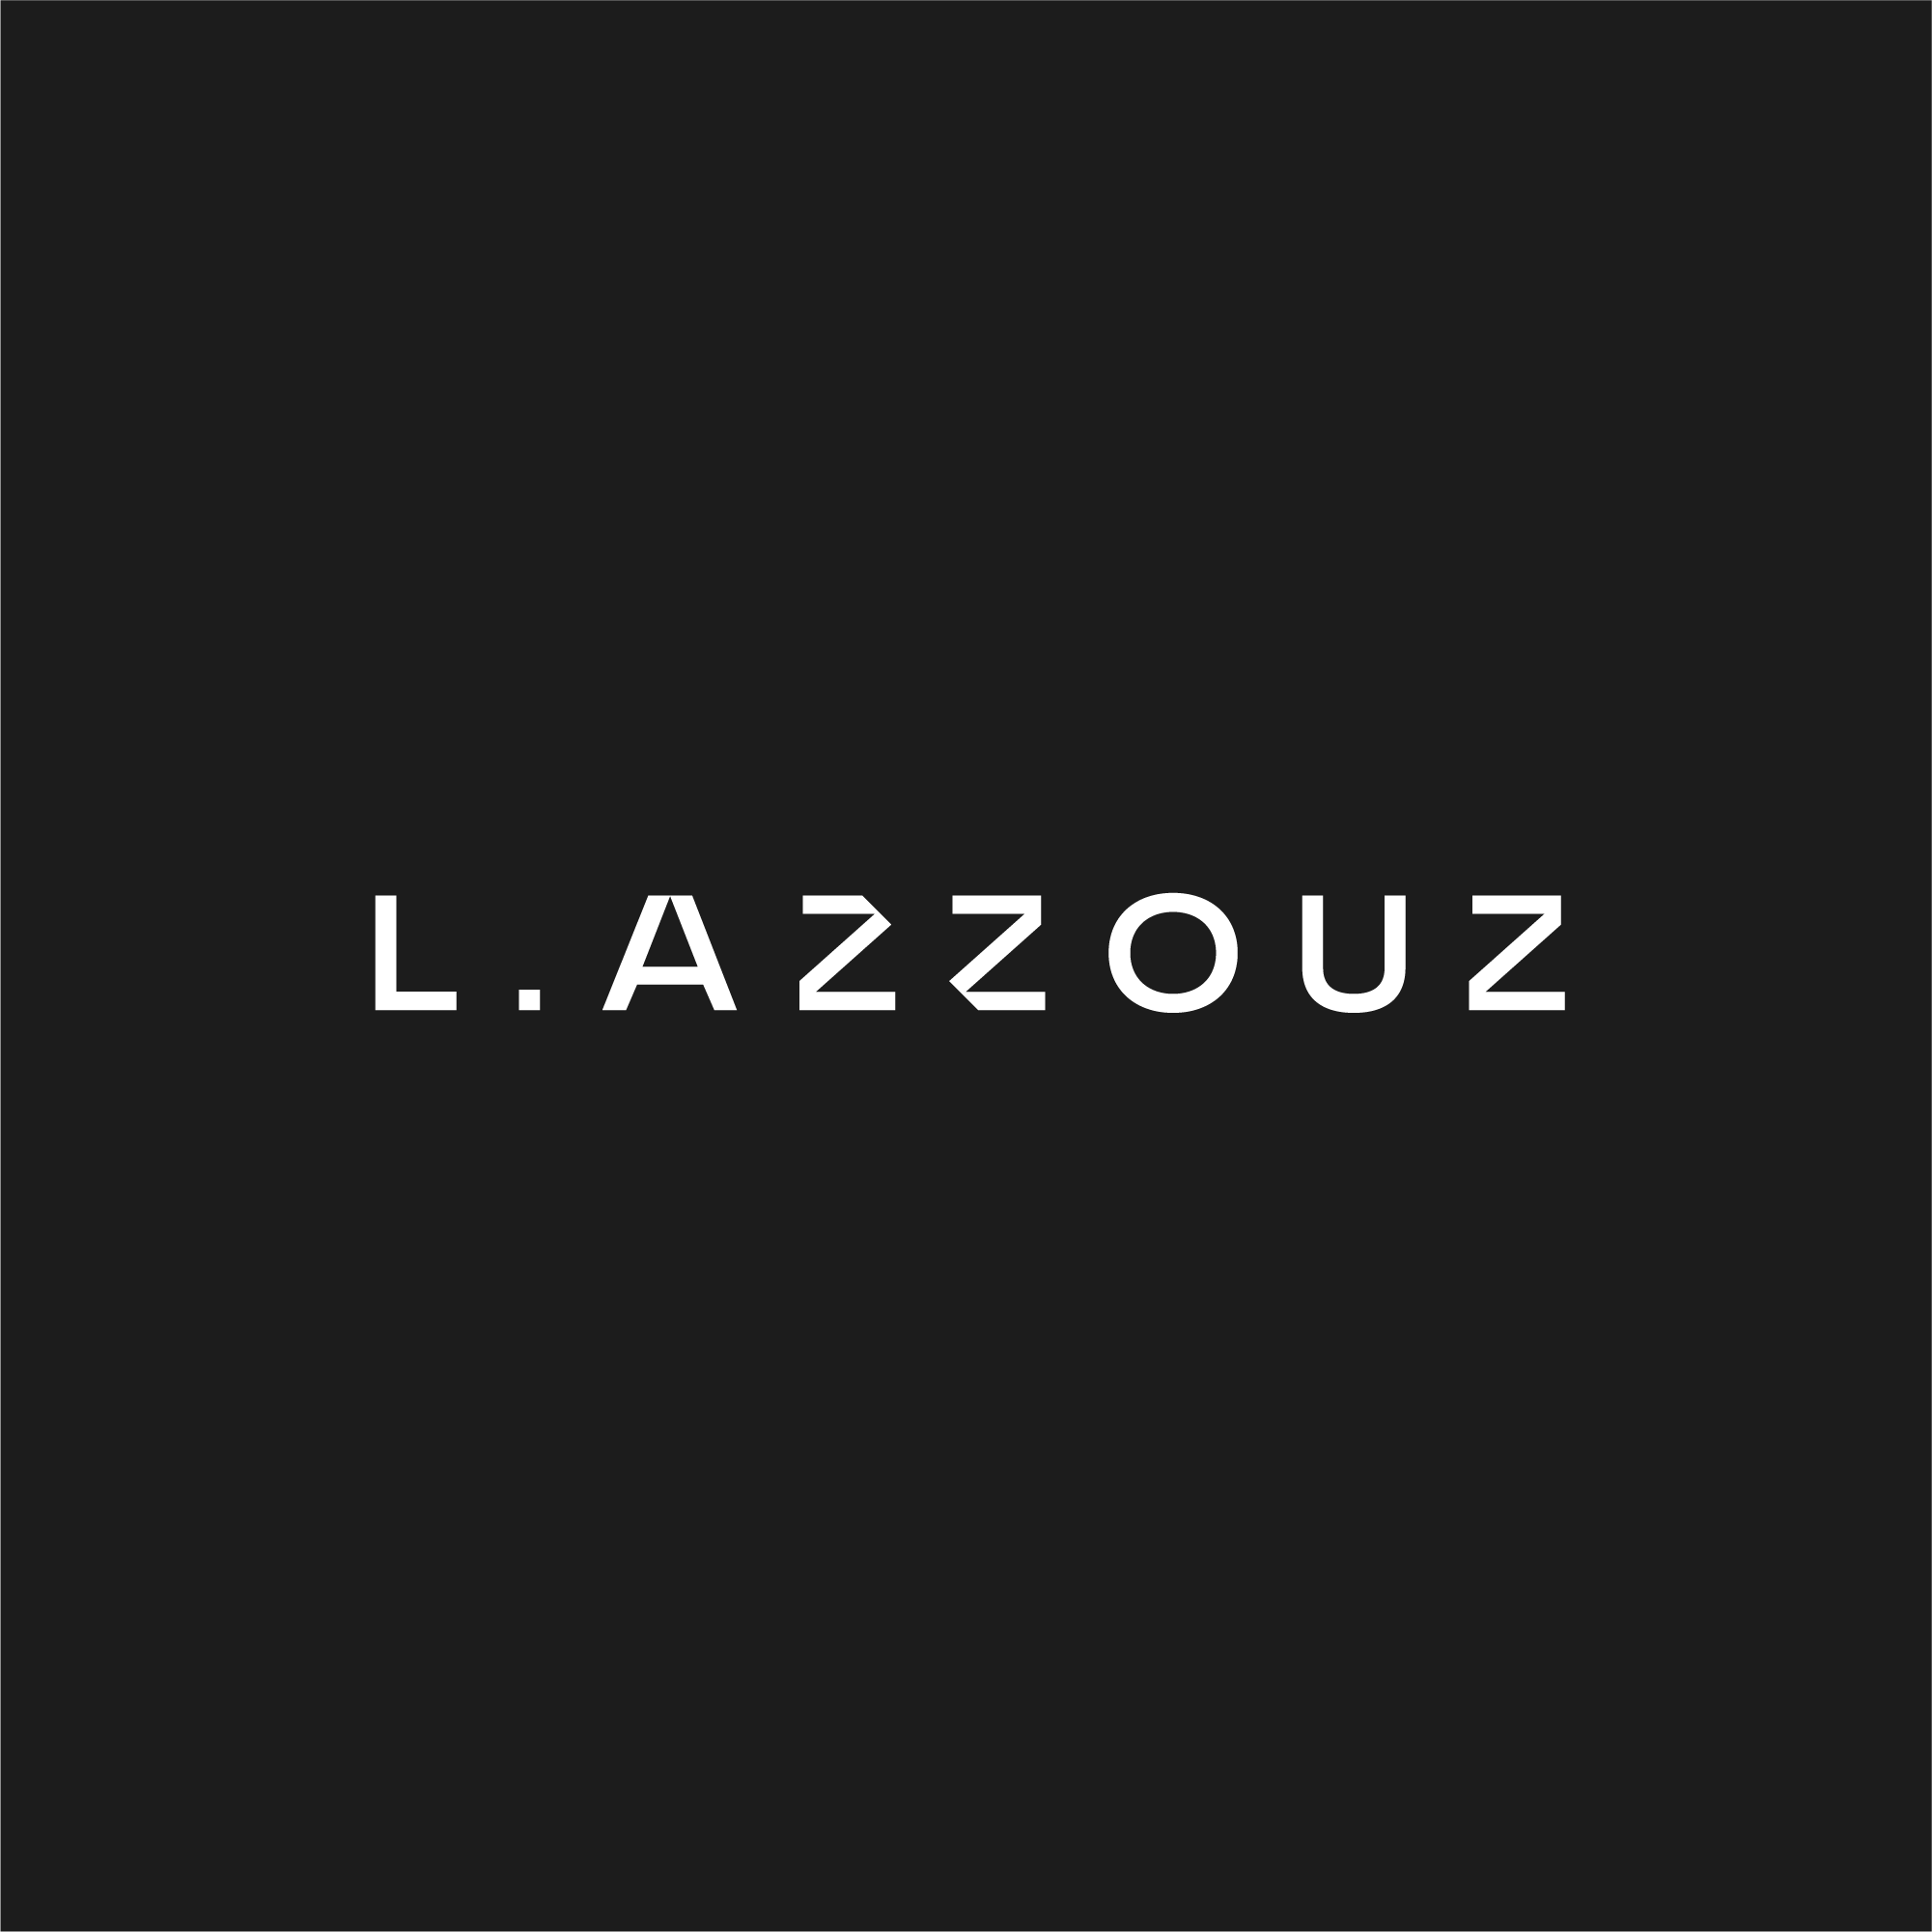 (c) Leilaazzouz.com